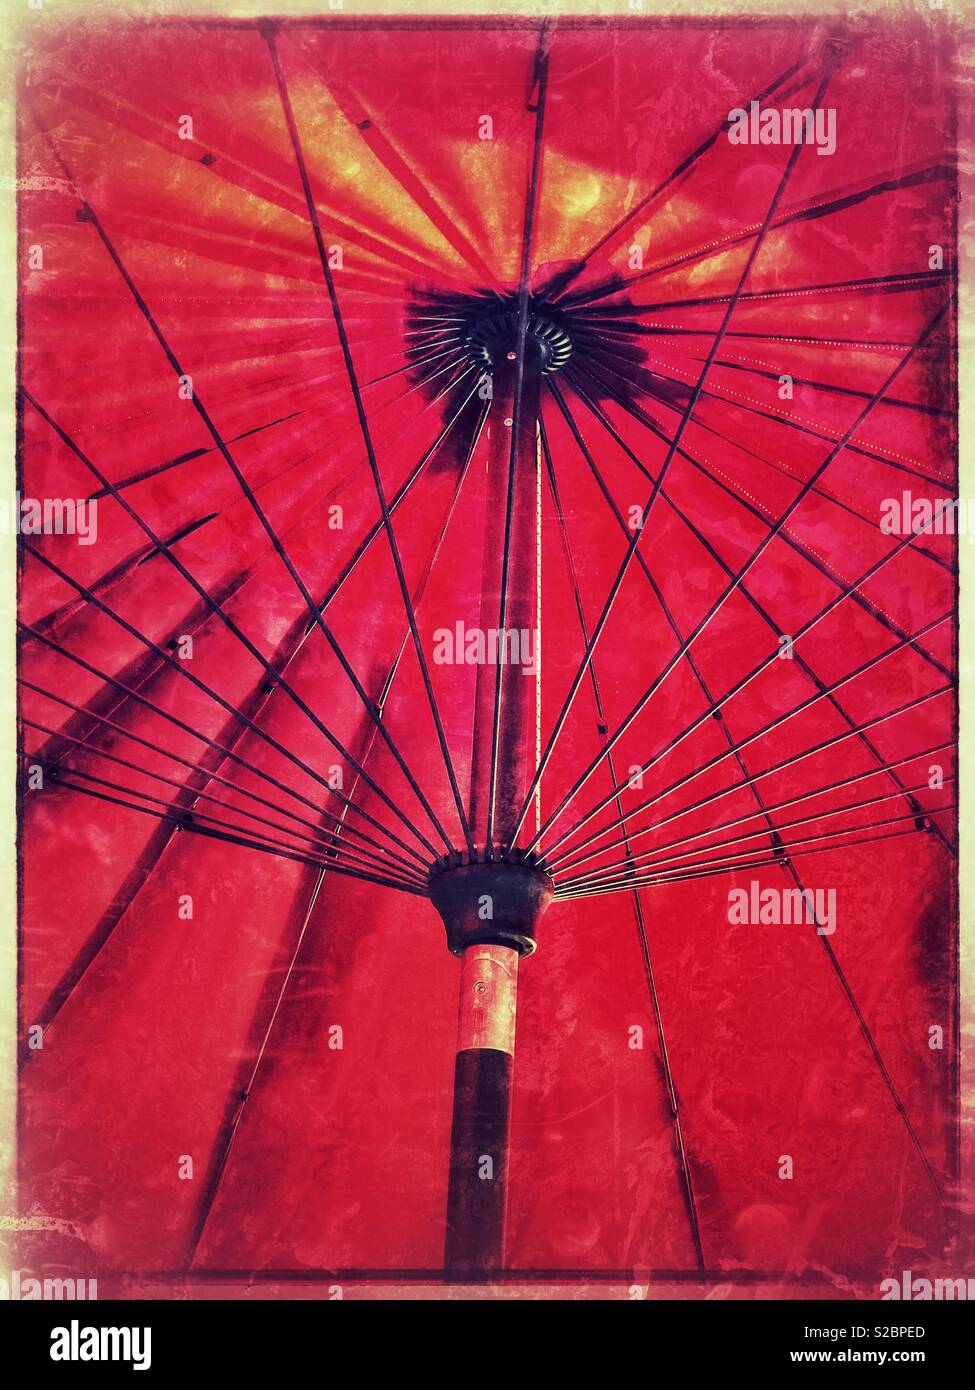 Parapluie rouge Banque D'Images